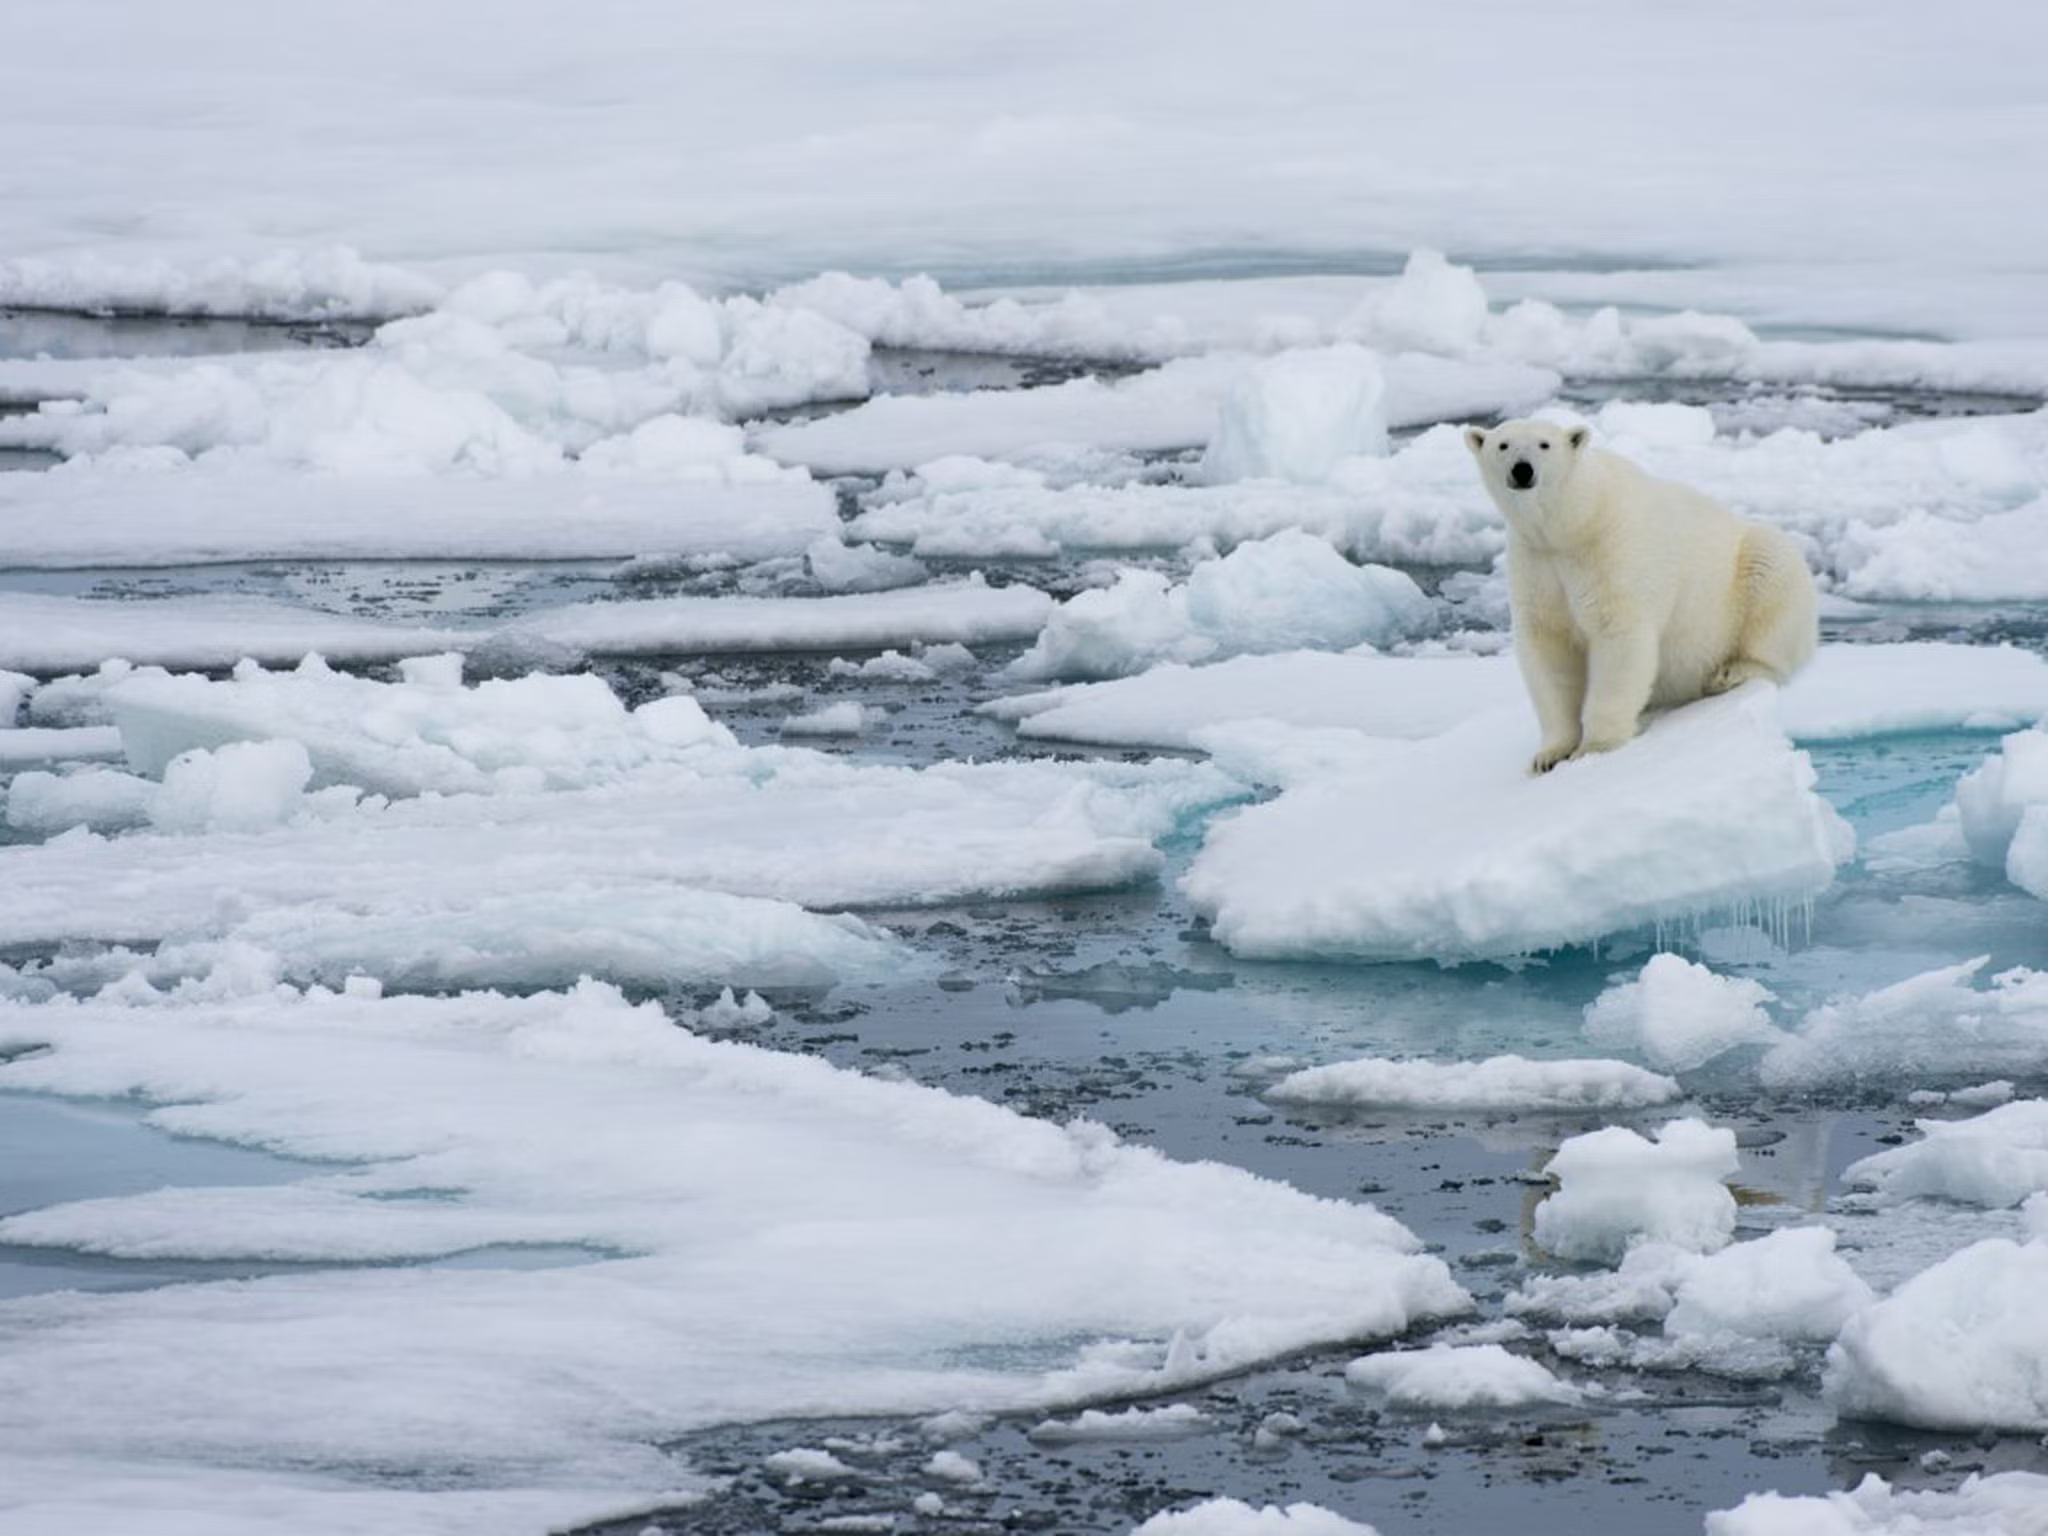 A polar bear in an ice flow.